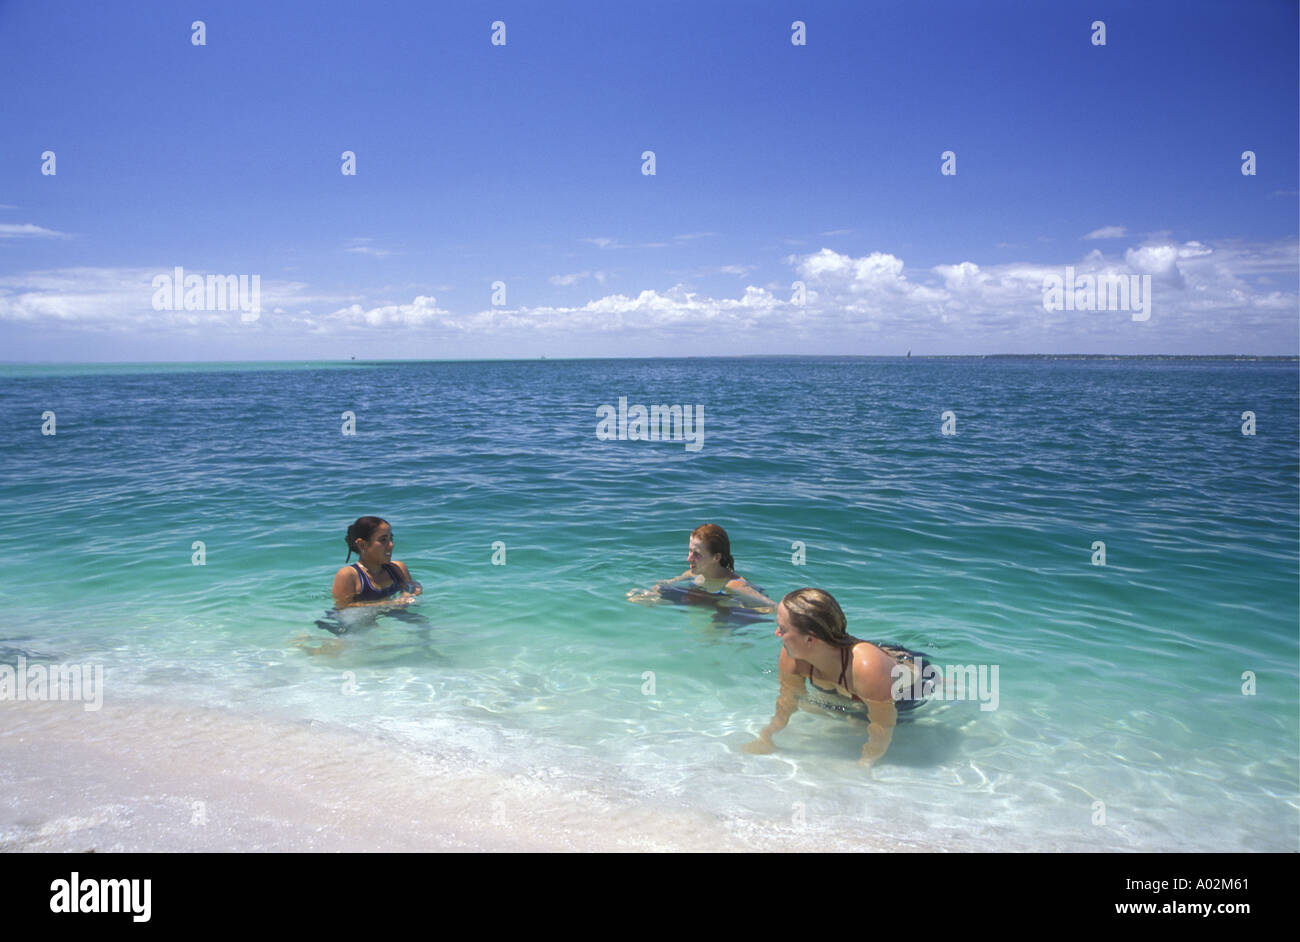 Los blancos jóvenes niñas disfrutando del agua pura en un arenal cercano isla Benguerra Mozambique África Foto de stock